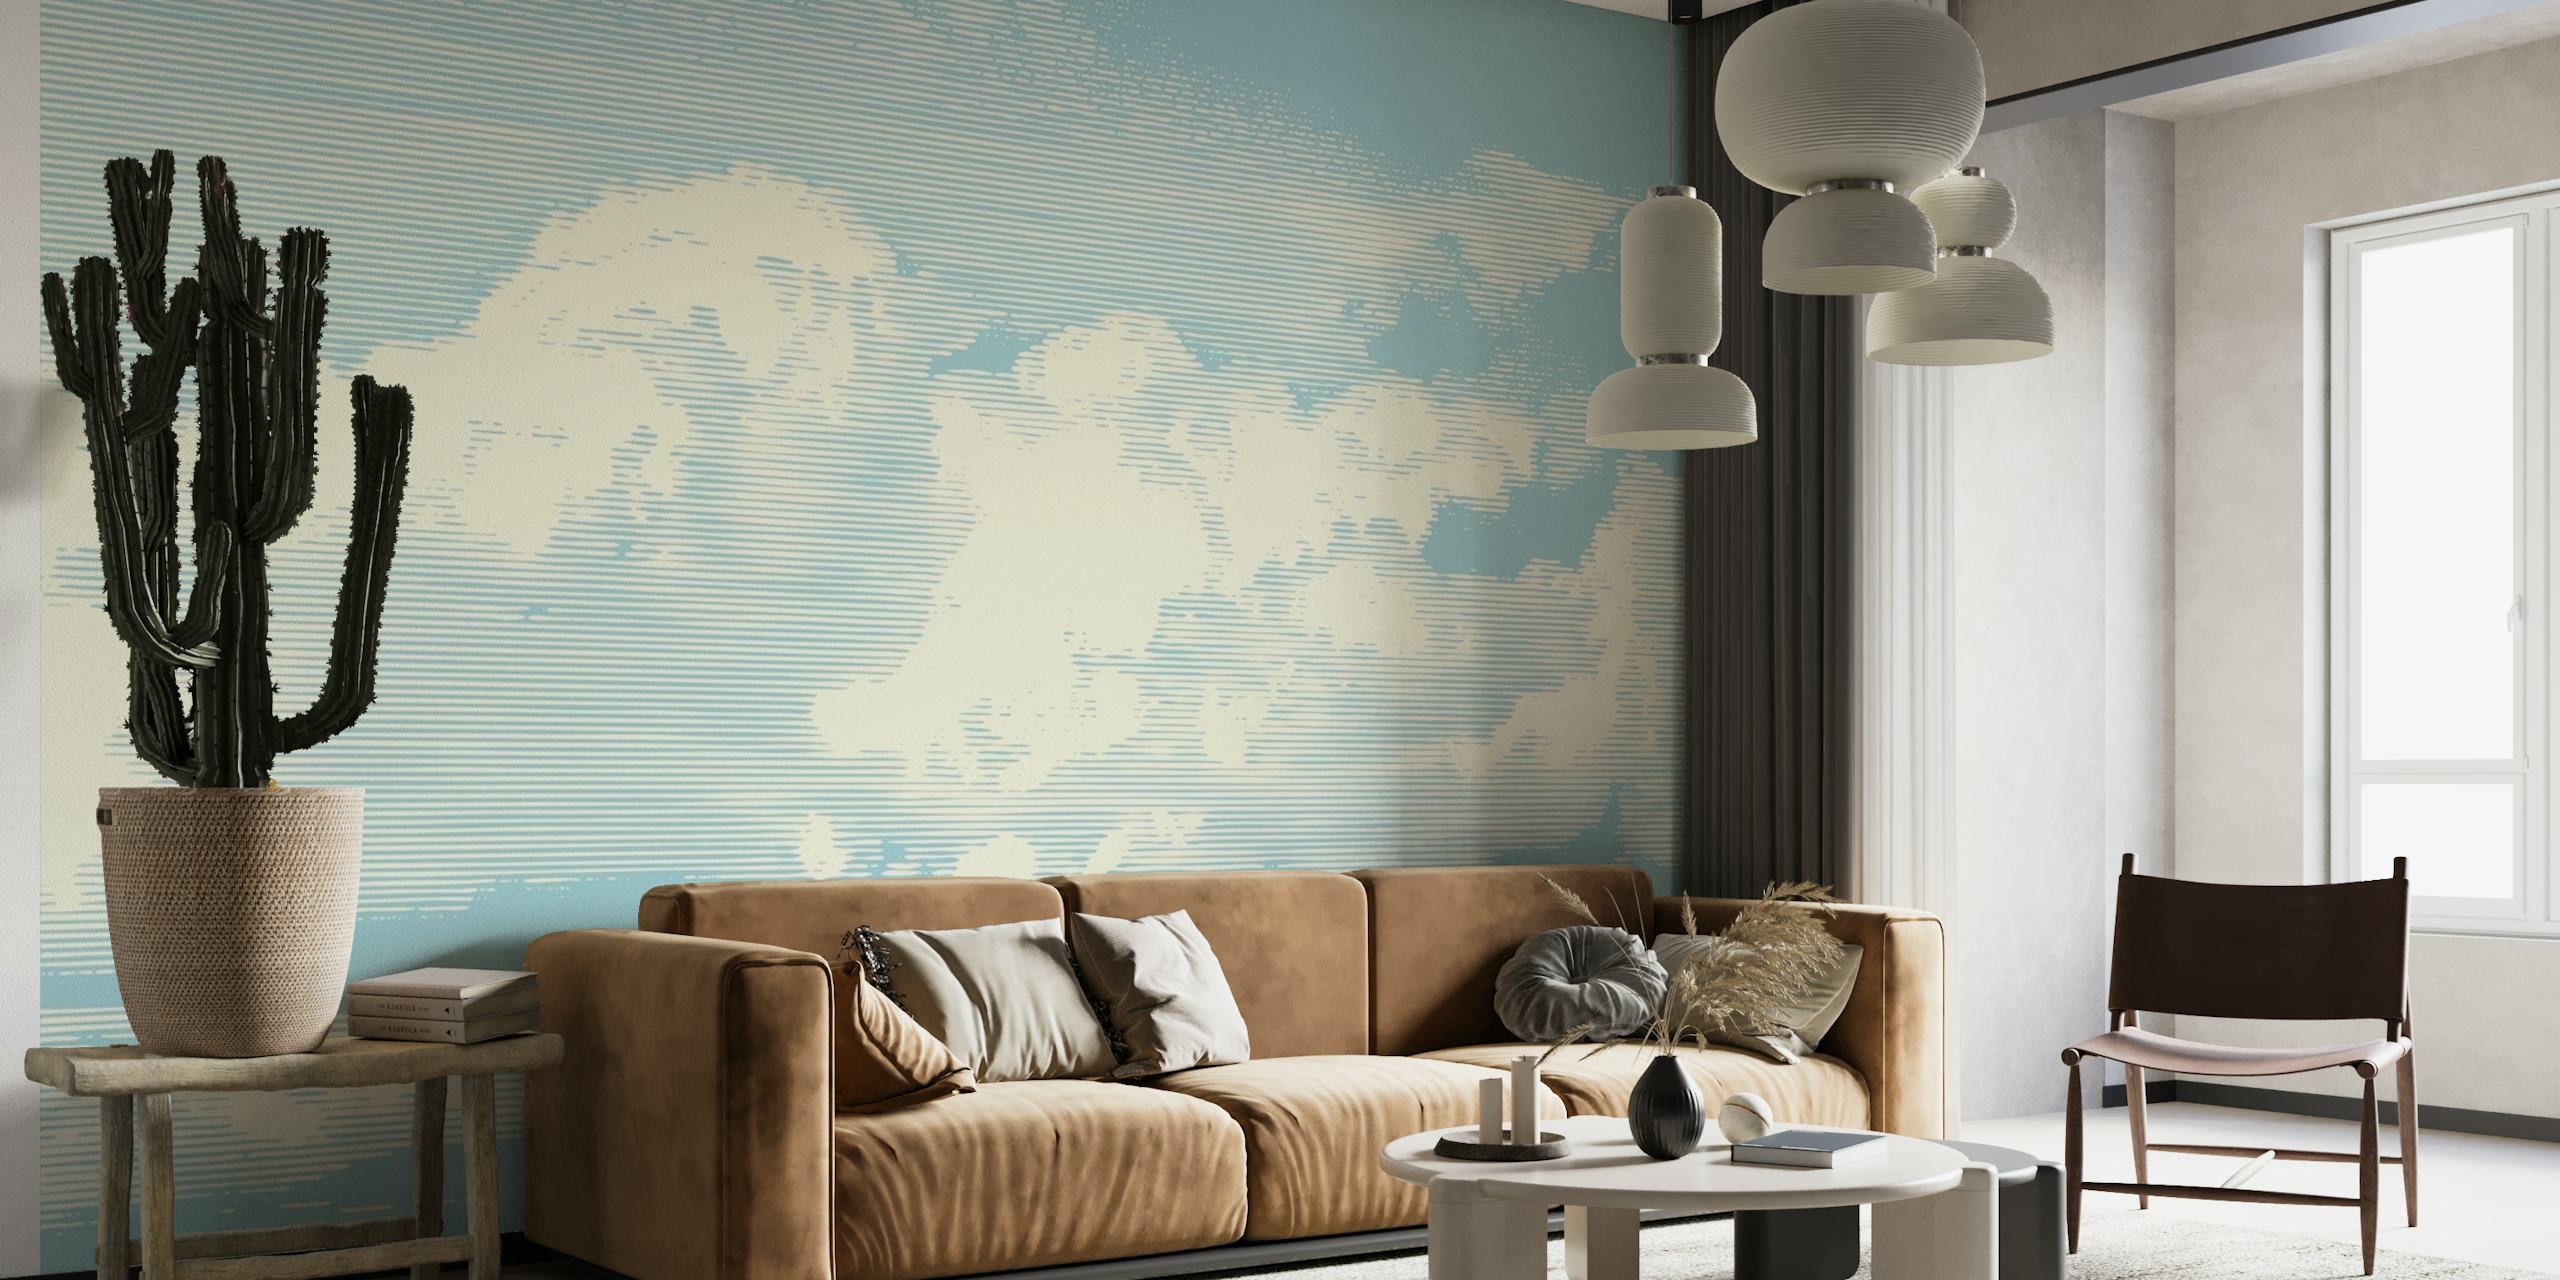 Æstetiske skyer i retrostil på et vægmaleri i pastelblå himmel